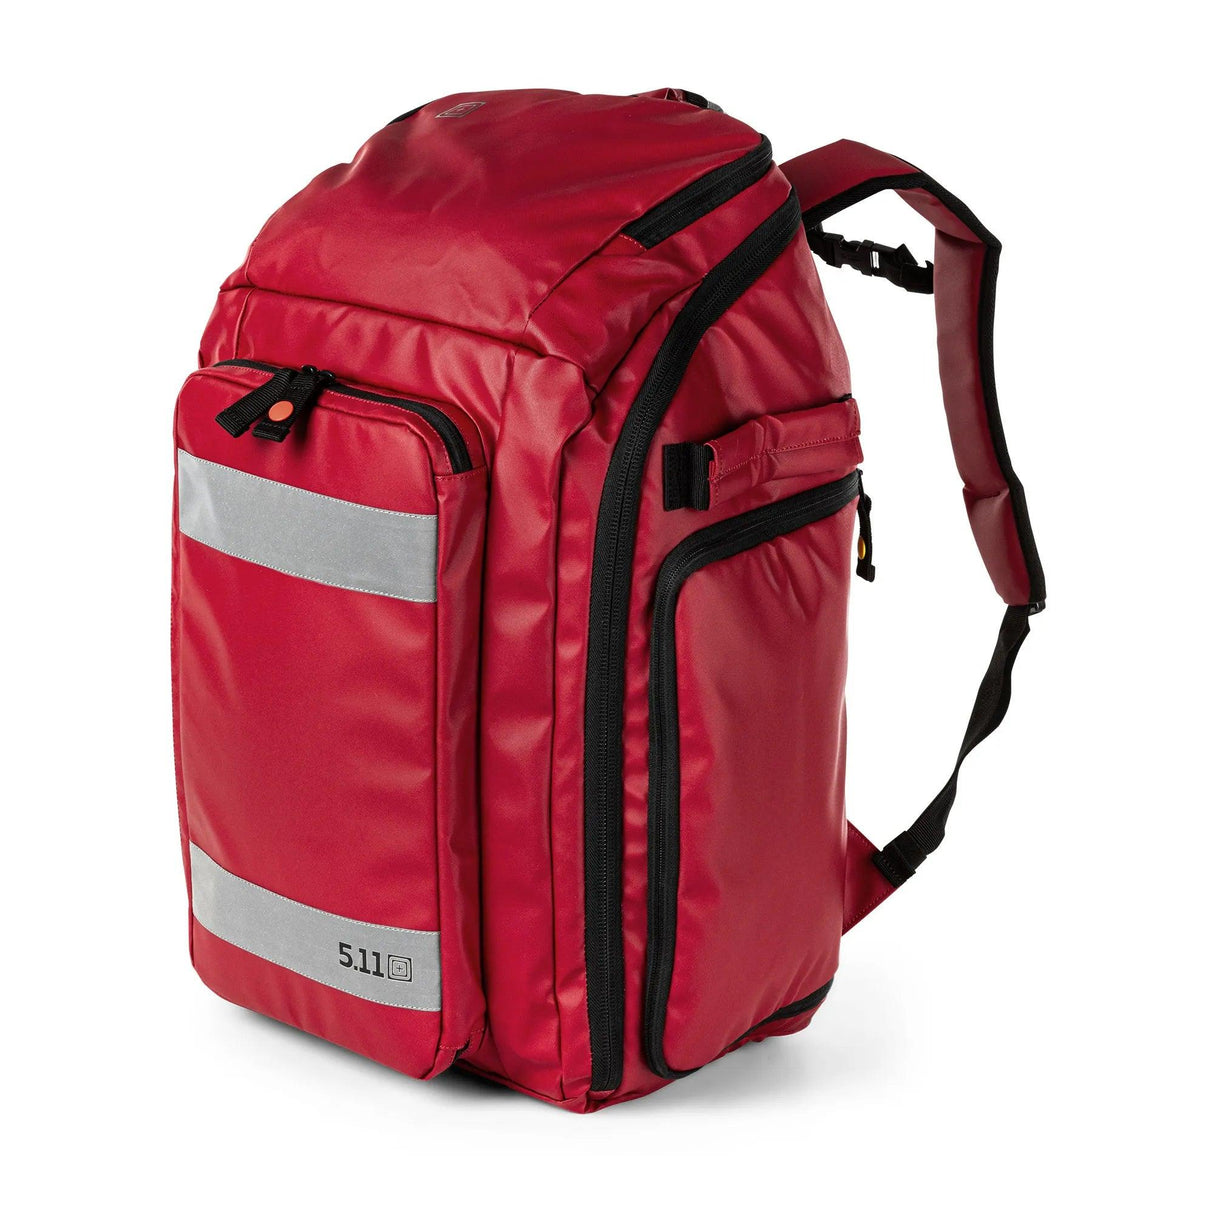 Responder 72 EMS Backpack – MED-TAC International Corp.